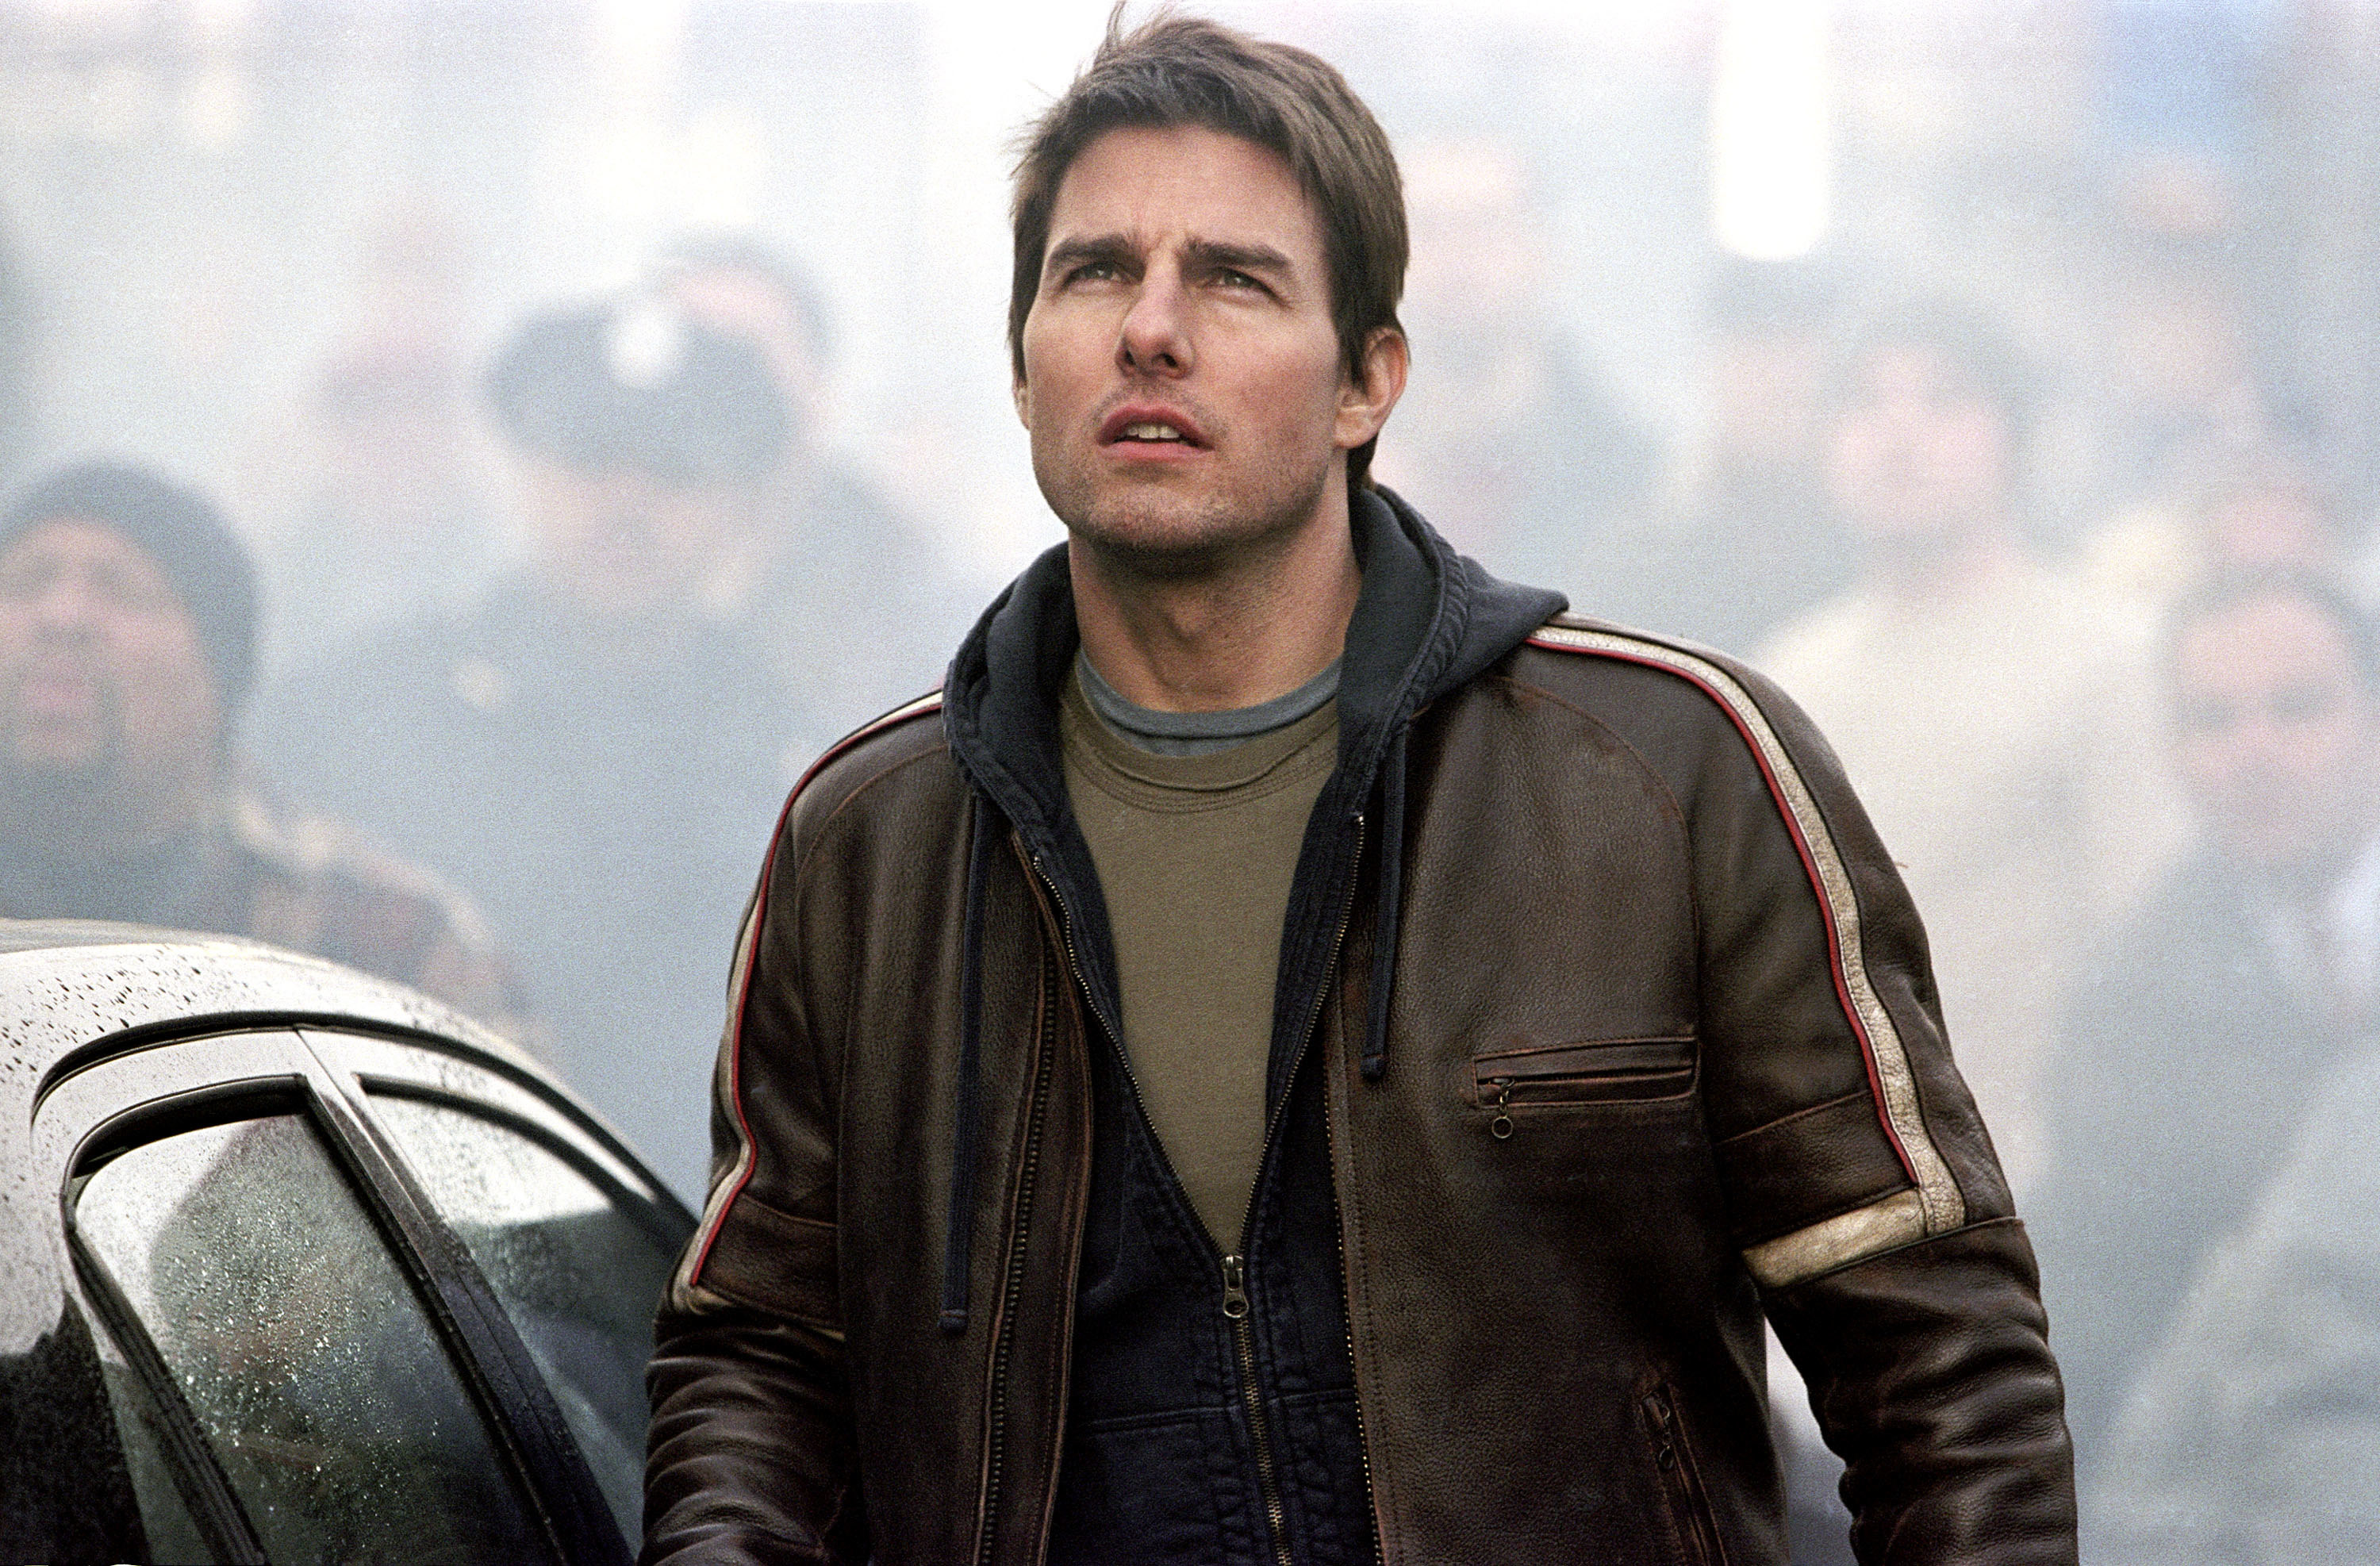 Closeup of Tom Cruise